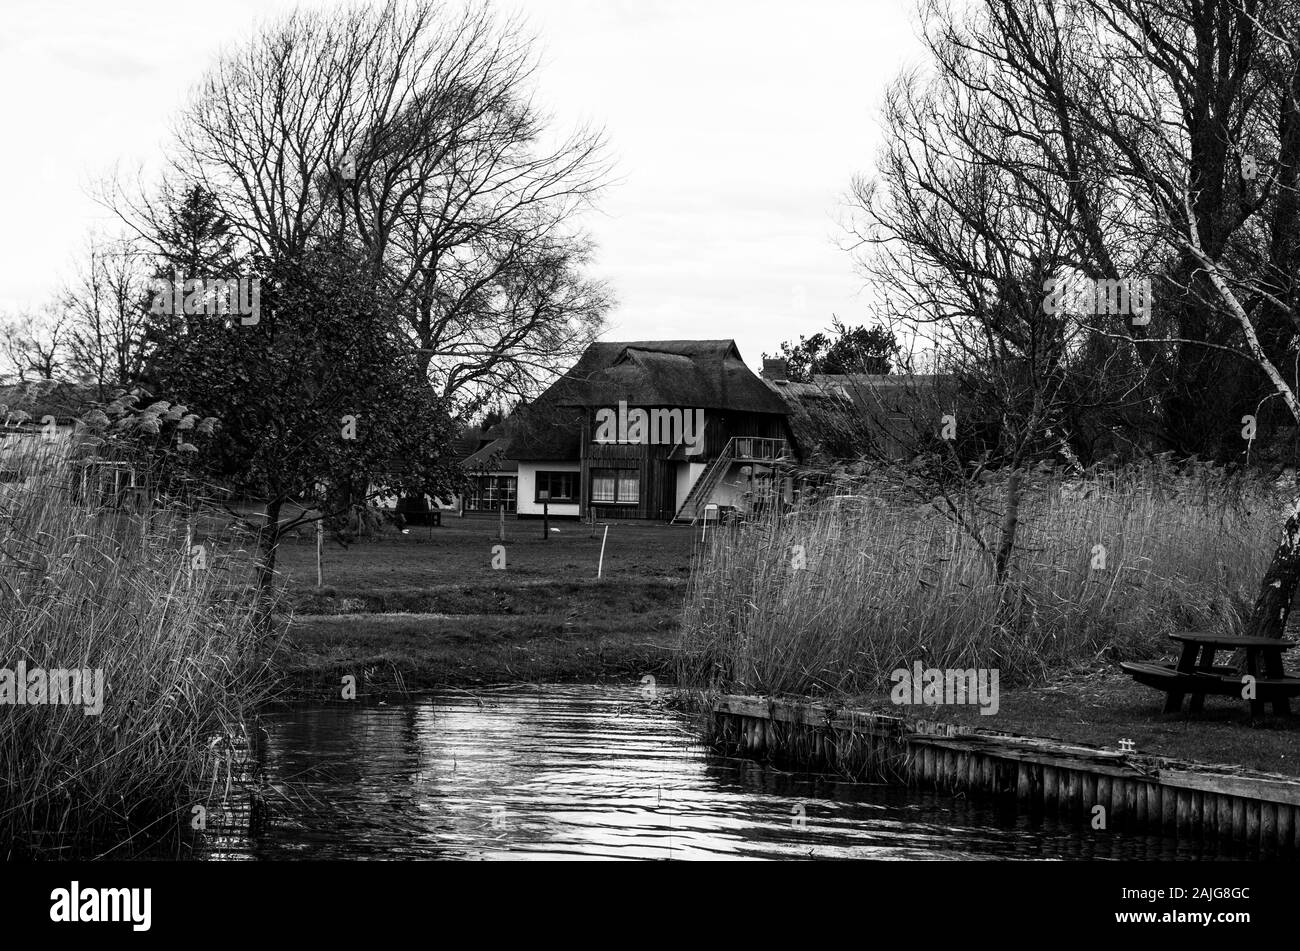 Il vecchio nostalgico Lake House, la fotografia in bianco e nero evoca una nostalgica visione del passato. Lago tedesco nel Mecklenburg Vorpommern. Foto Stock